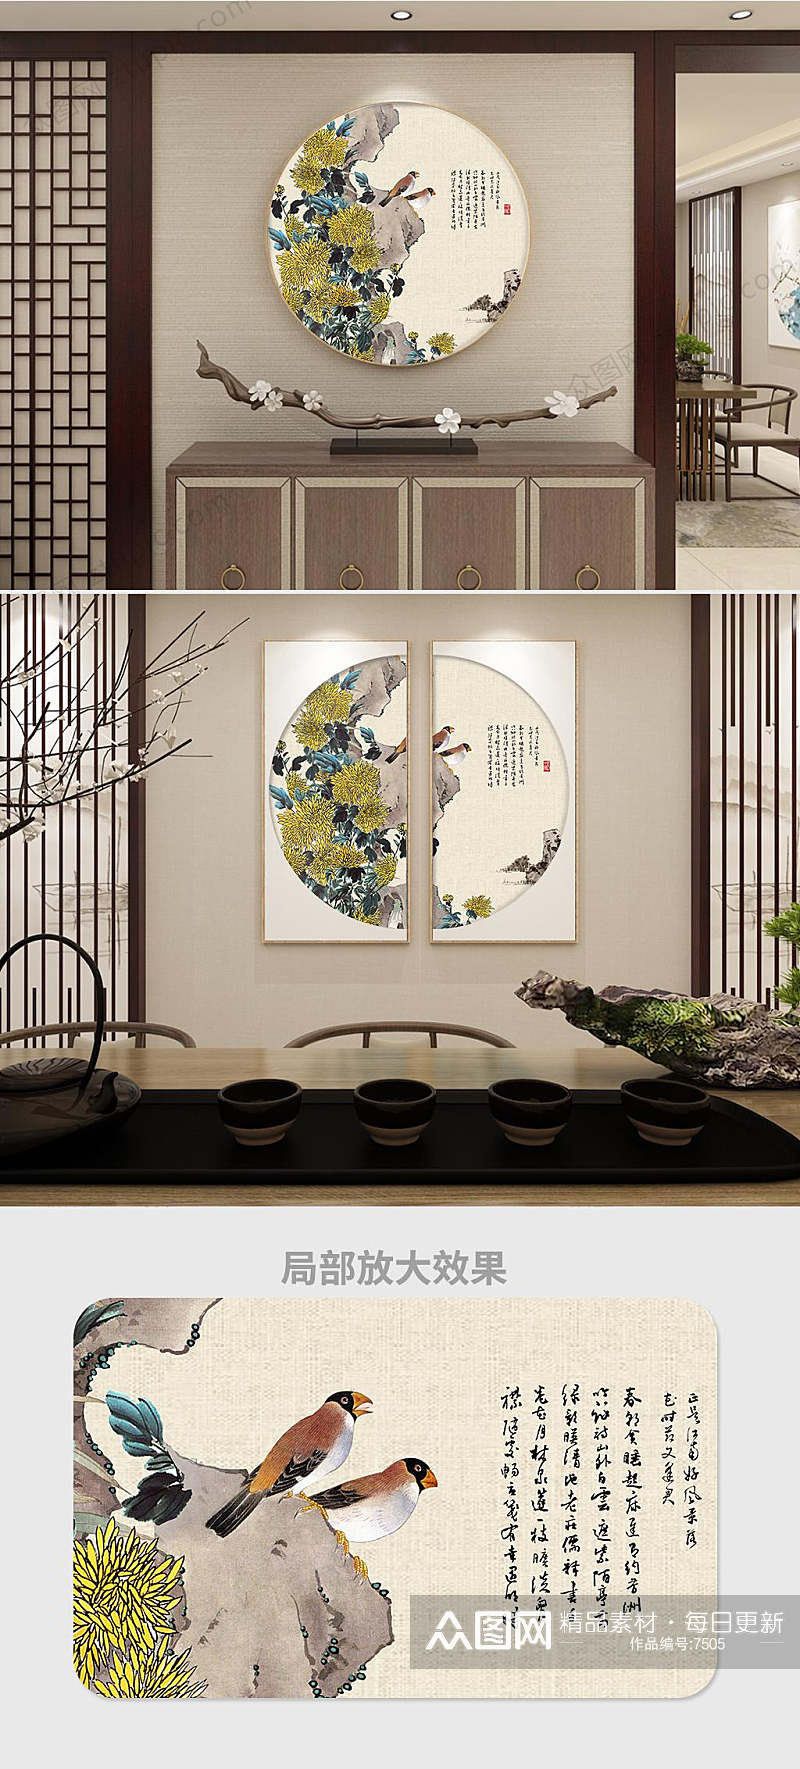 君子菊中式圆形装饰画素材